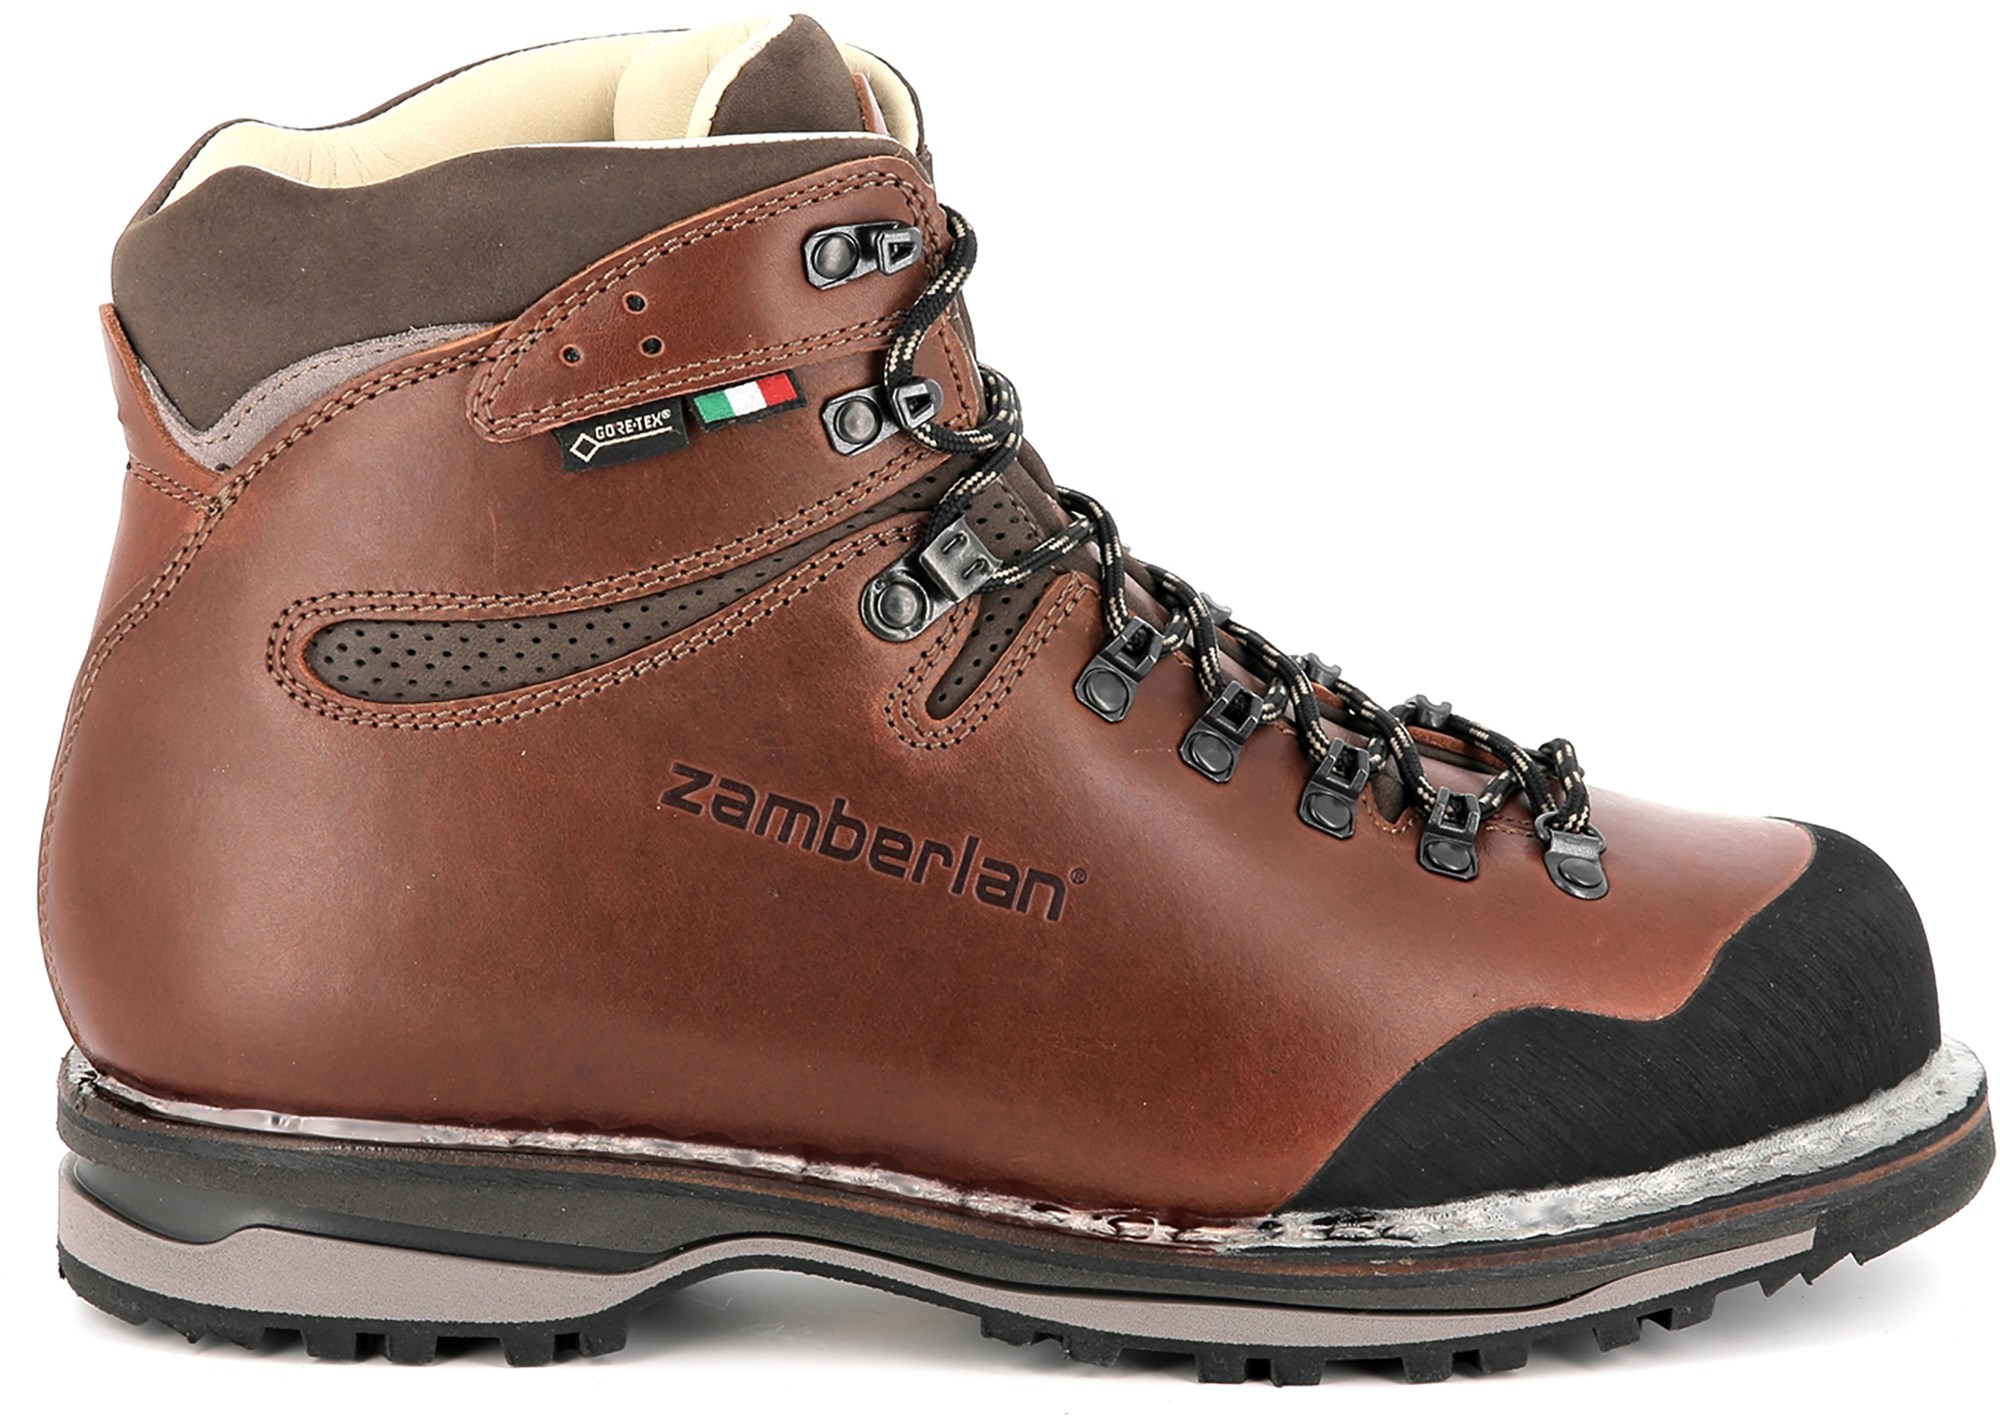 Походные ботинки Tofane NW GTX RR — мужские Zamberlan, коричневый